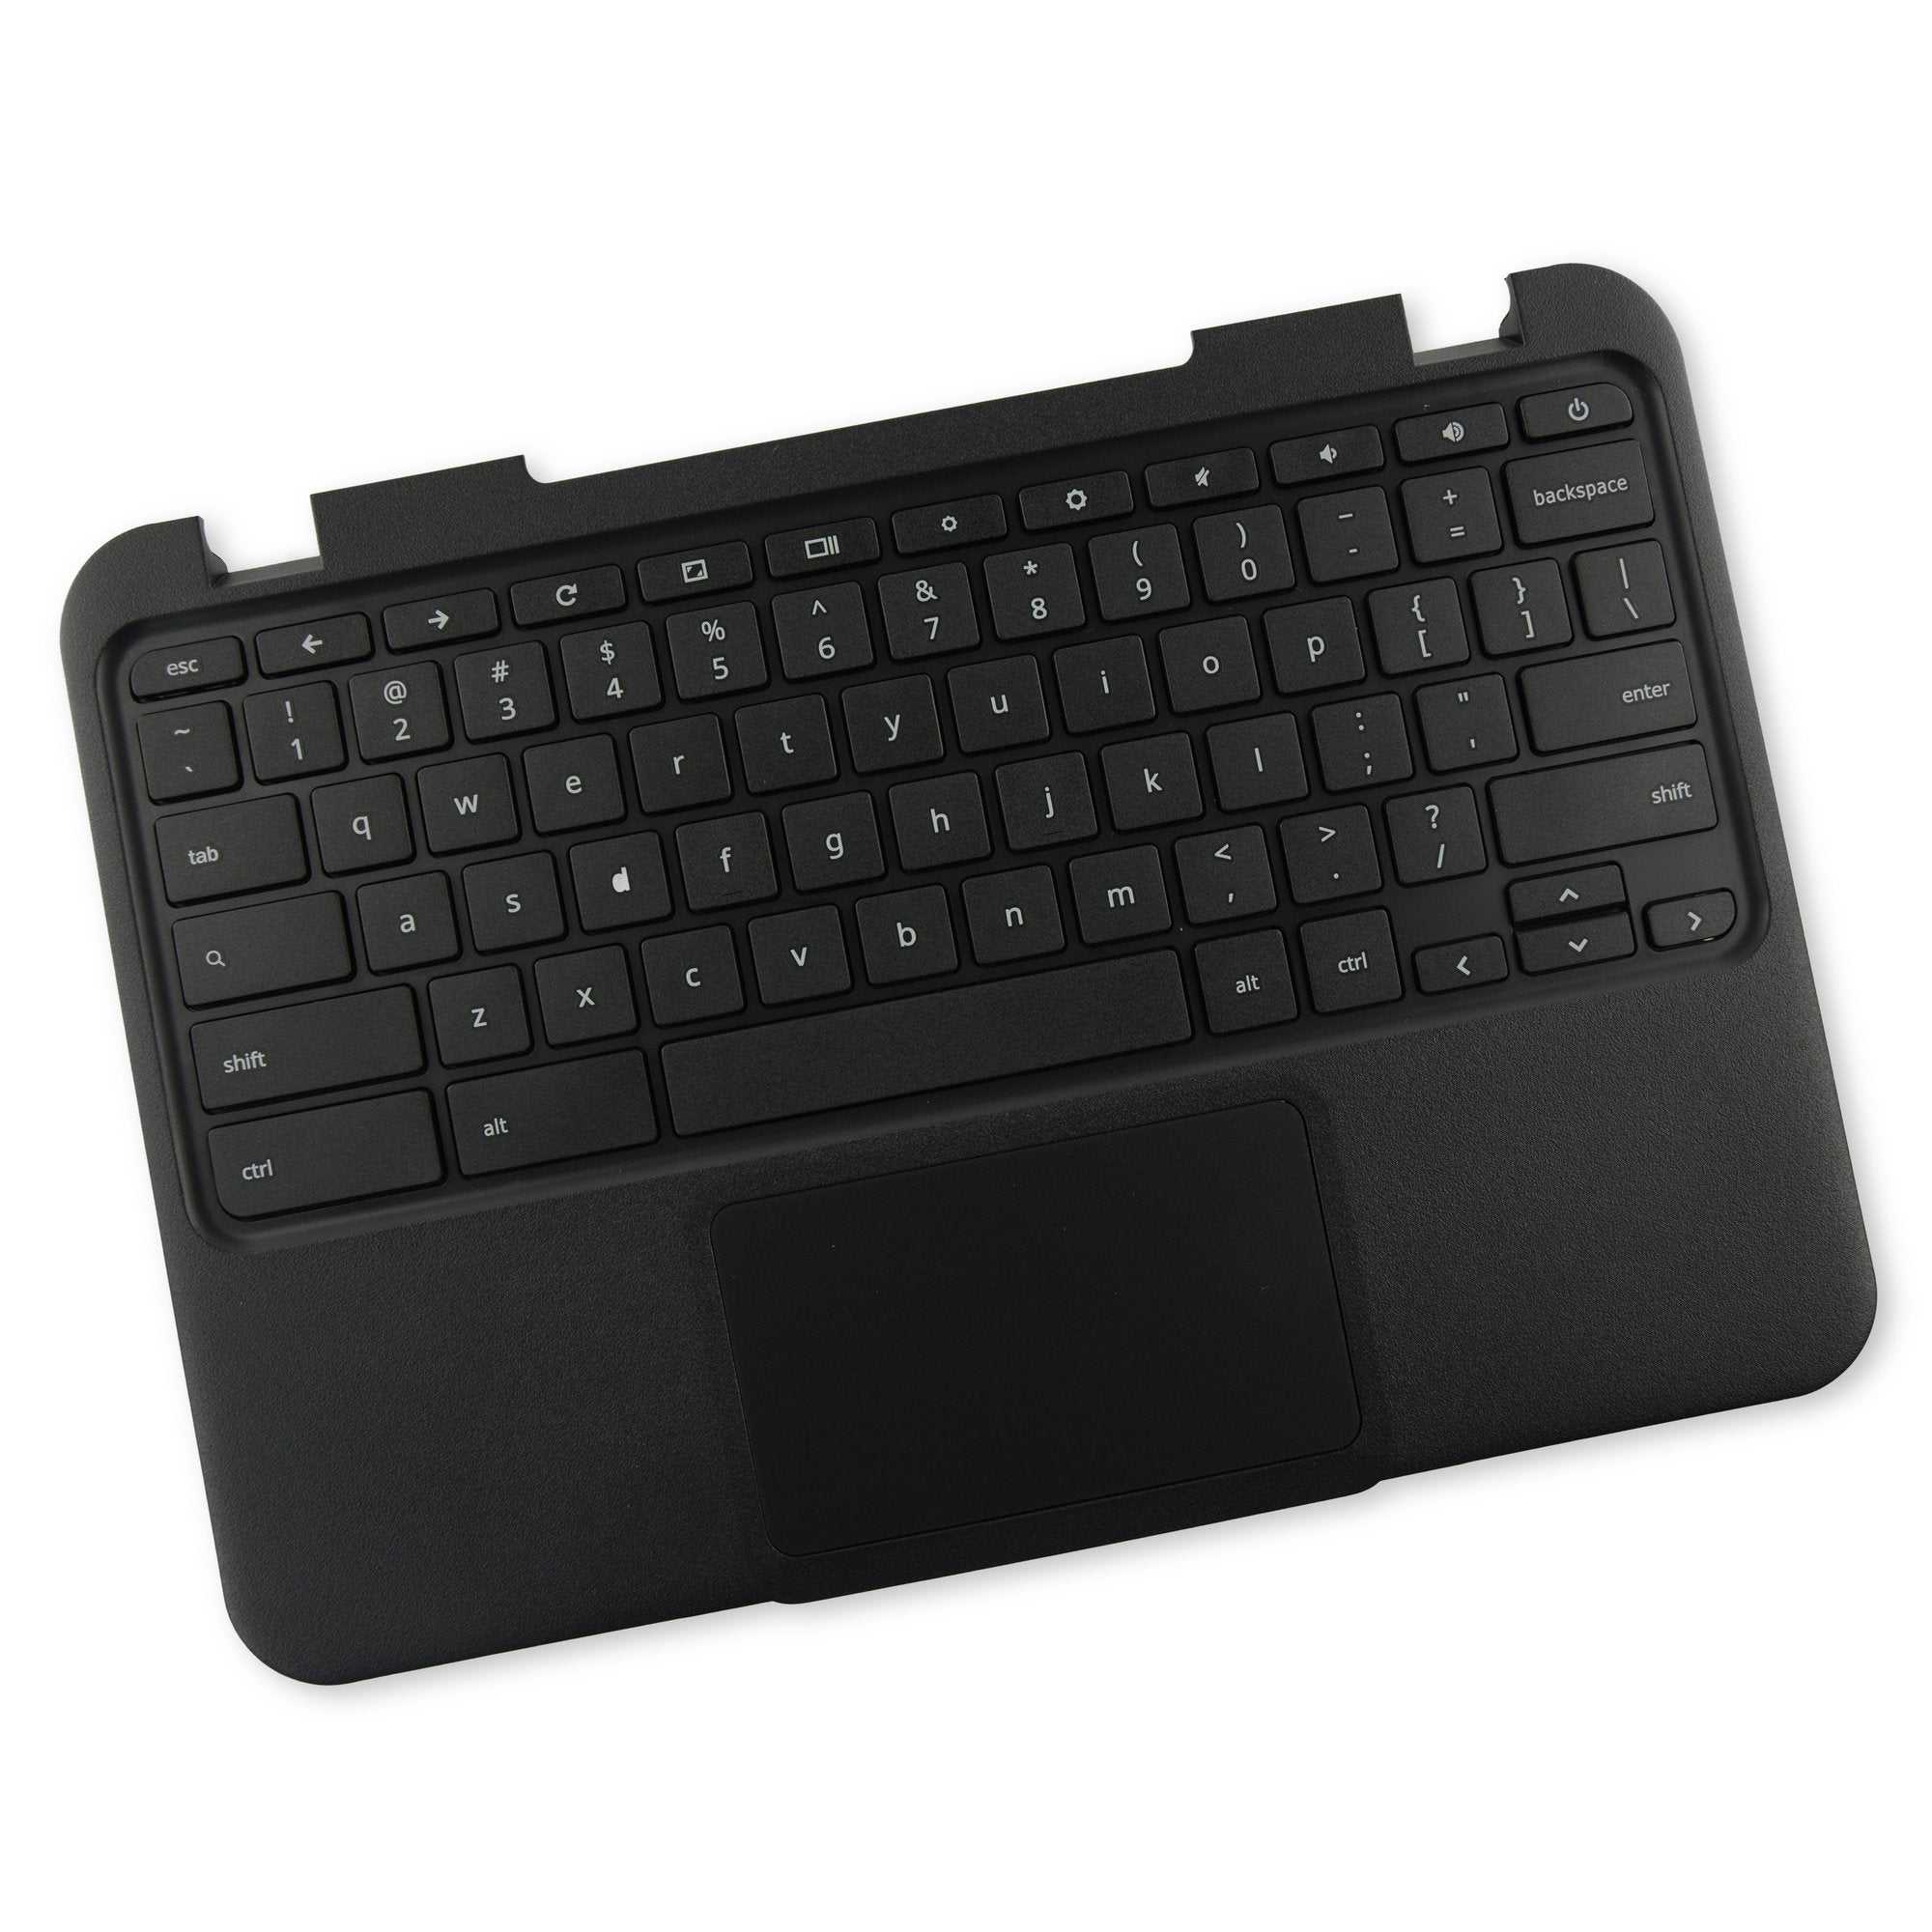 Lenovo Chromebook 11 N21 Palmrest Keyboard Touchpad Assembly